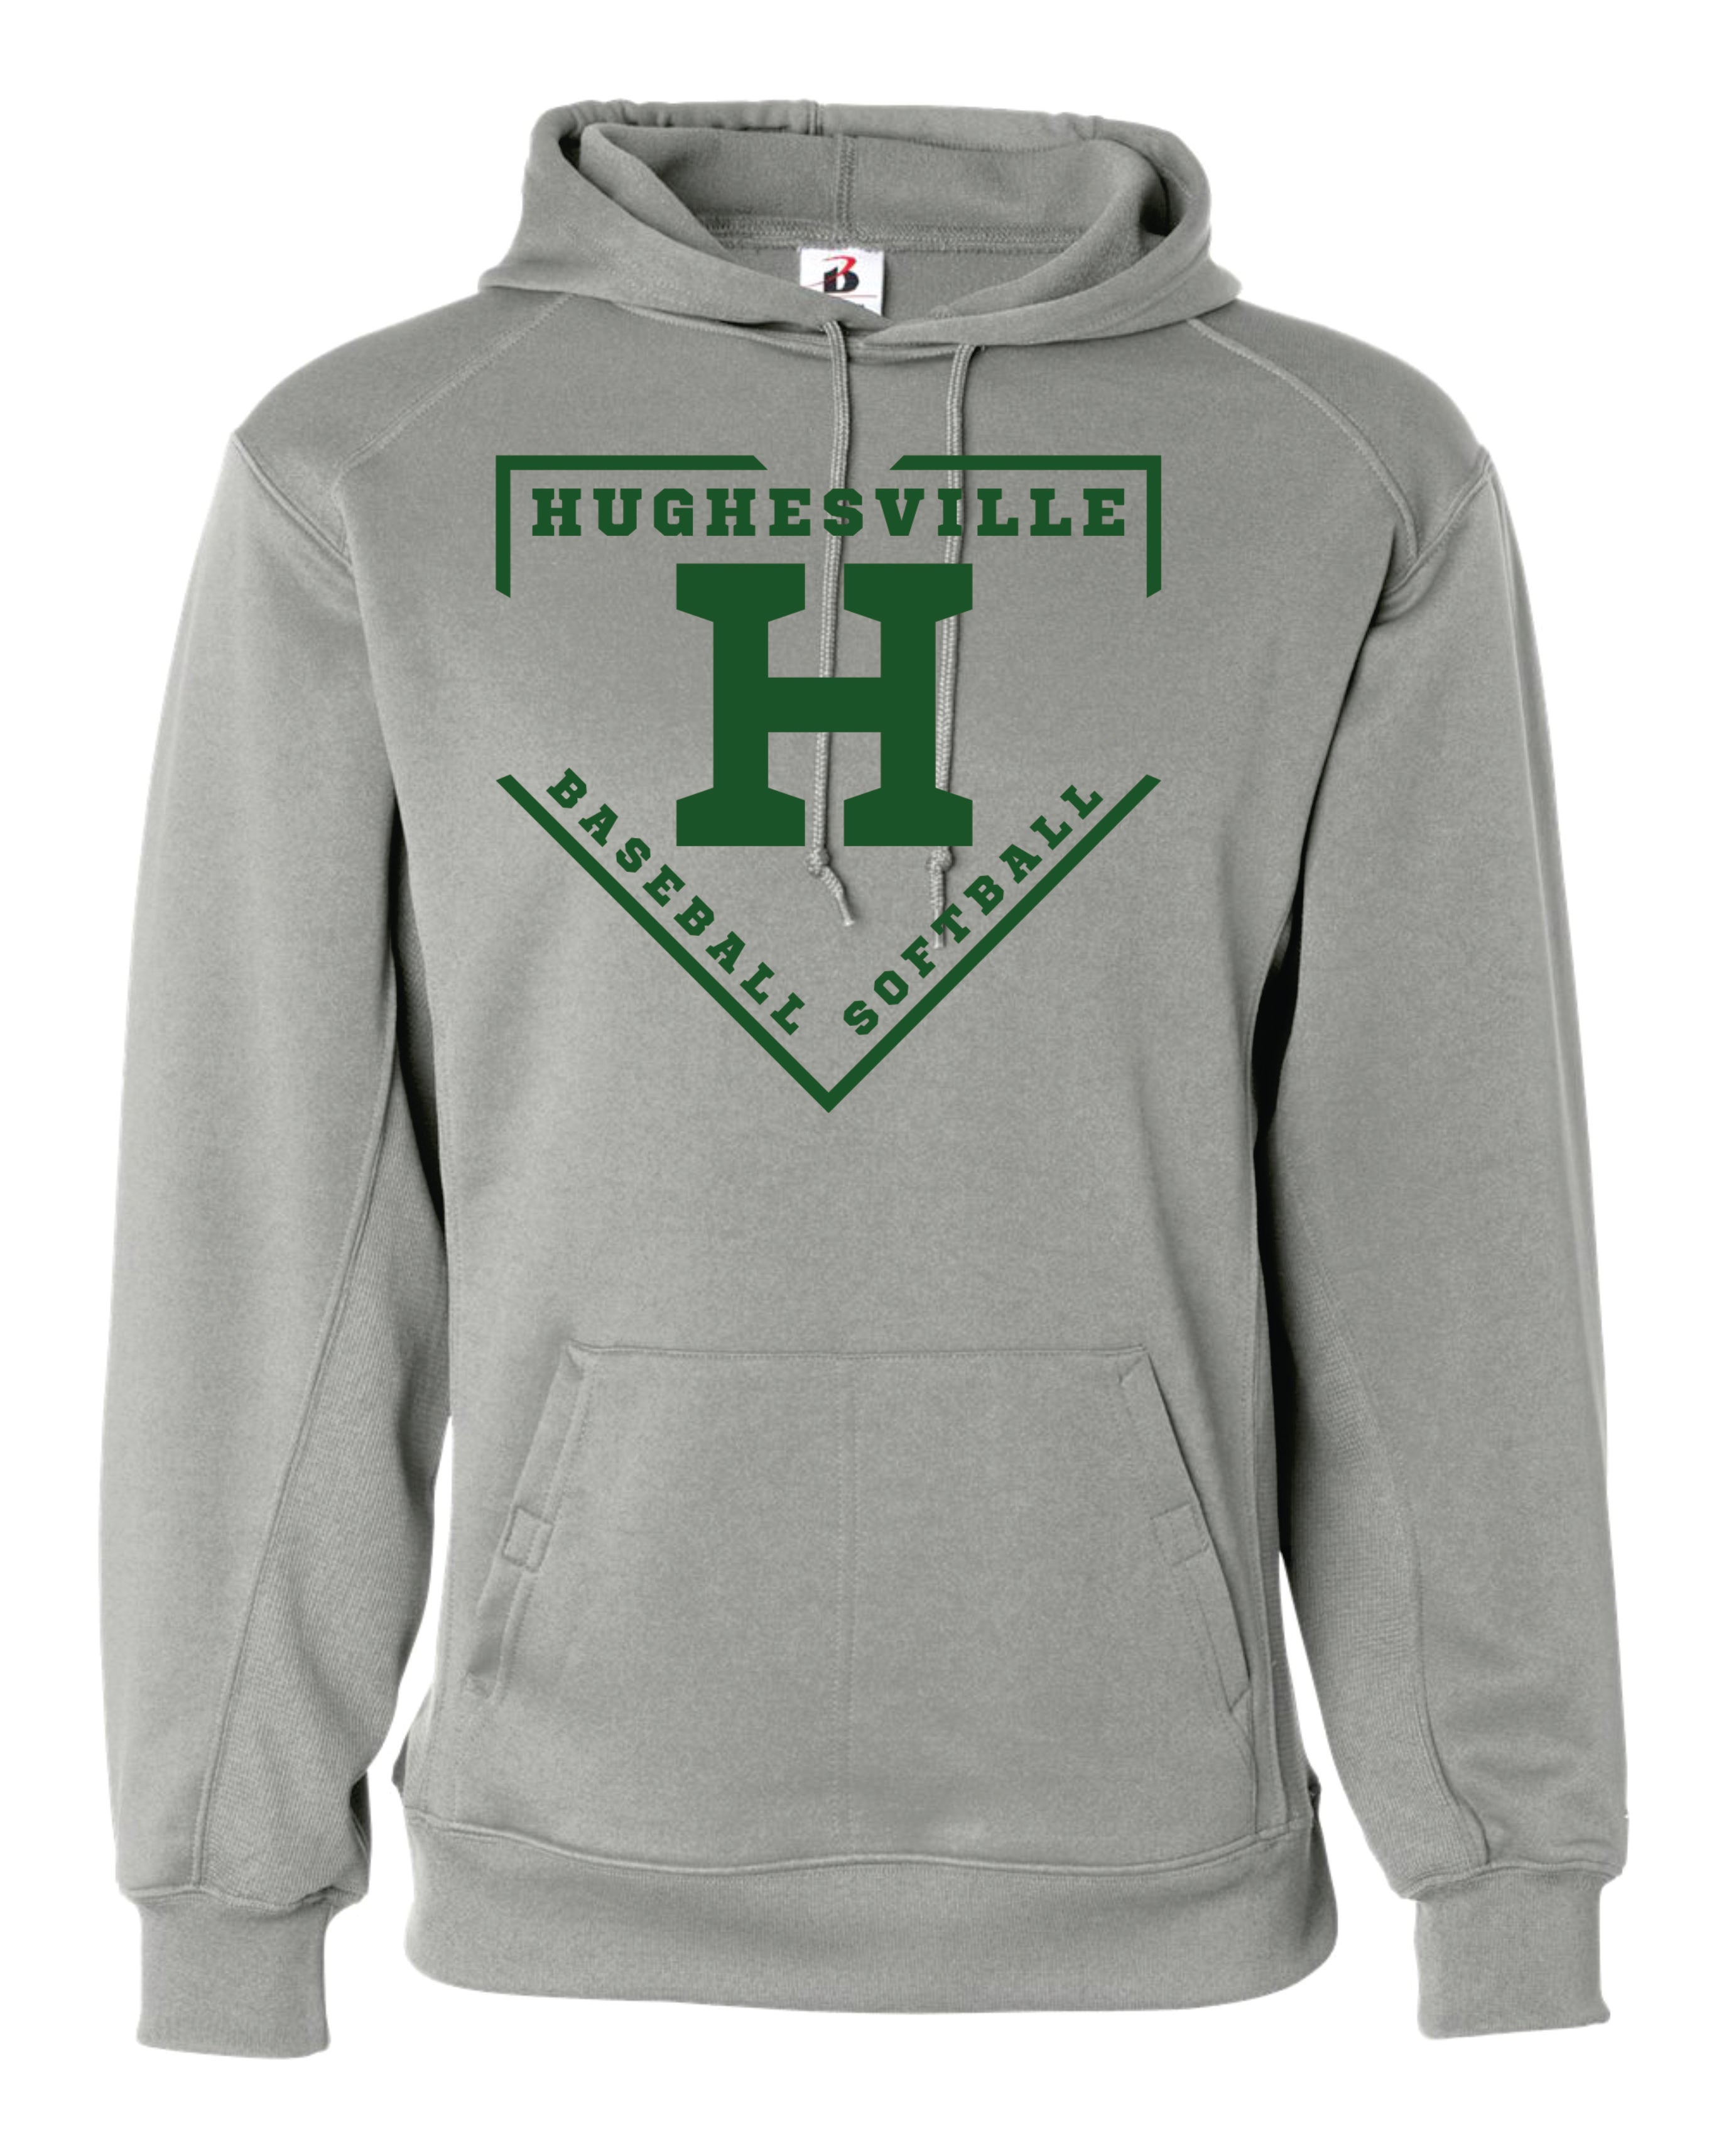 Hughesville Little League Badger Dri-fit Hoodie Women